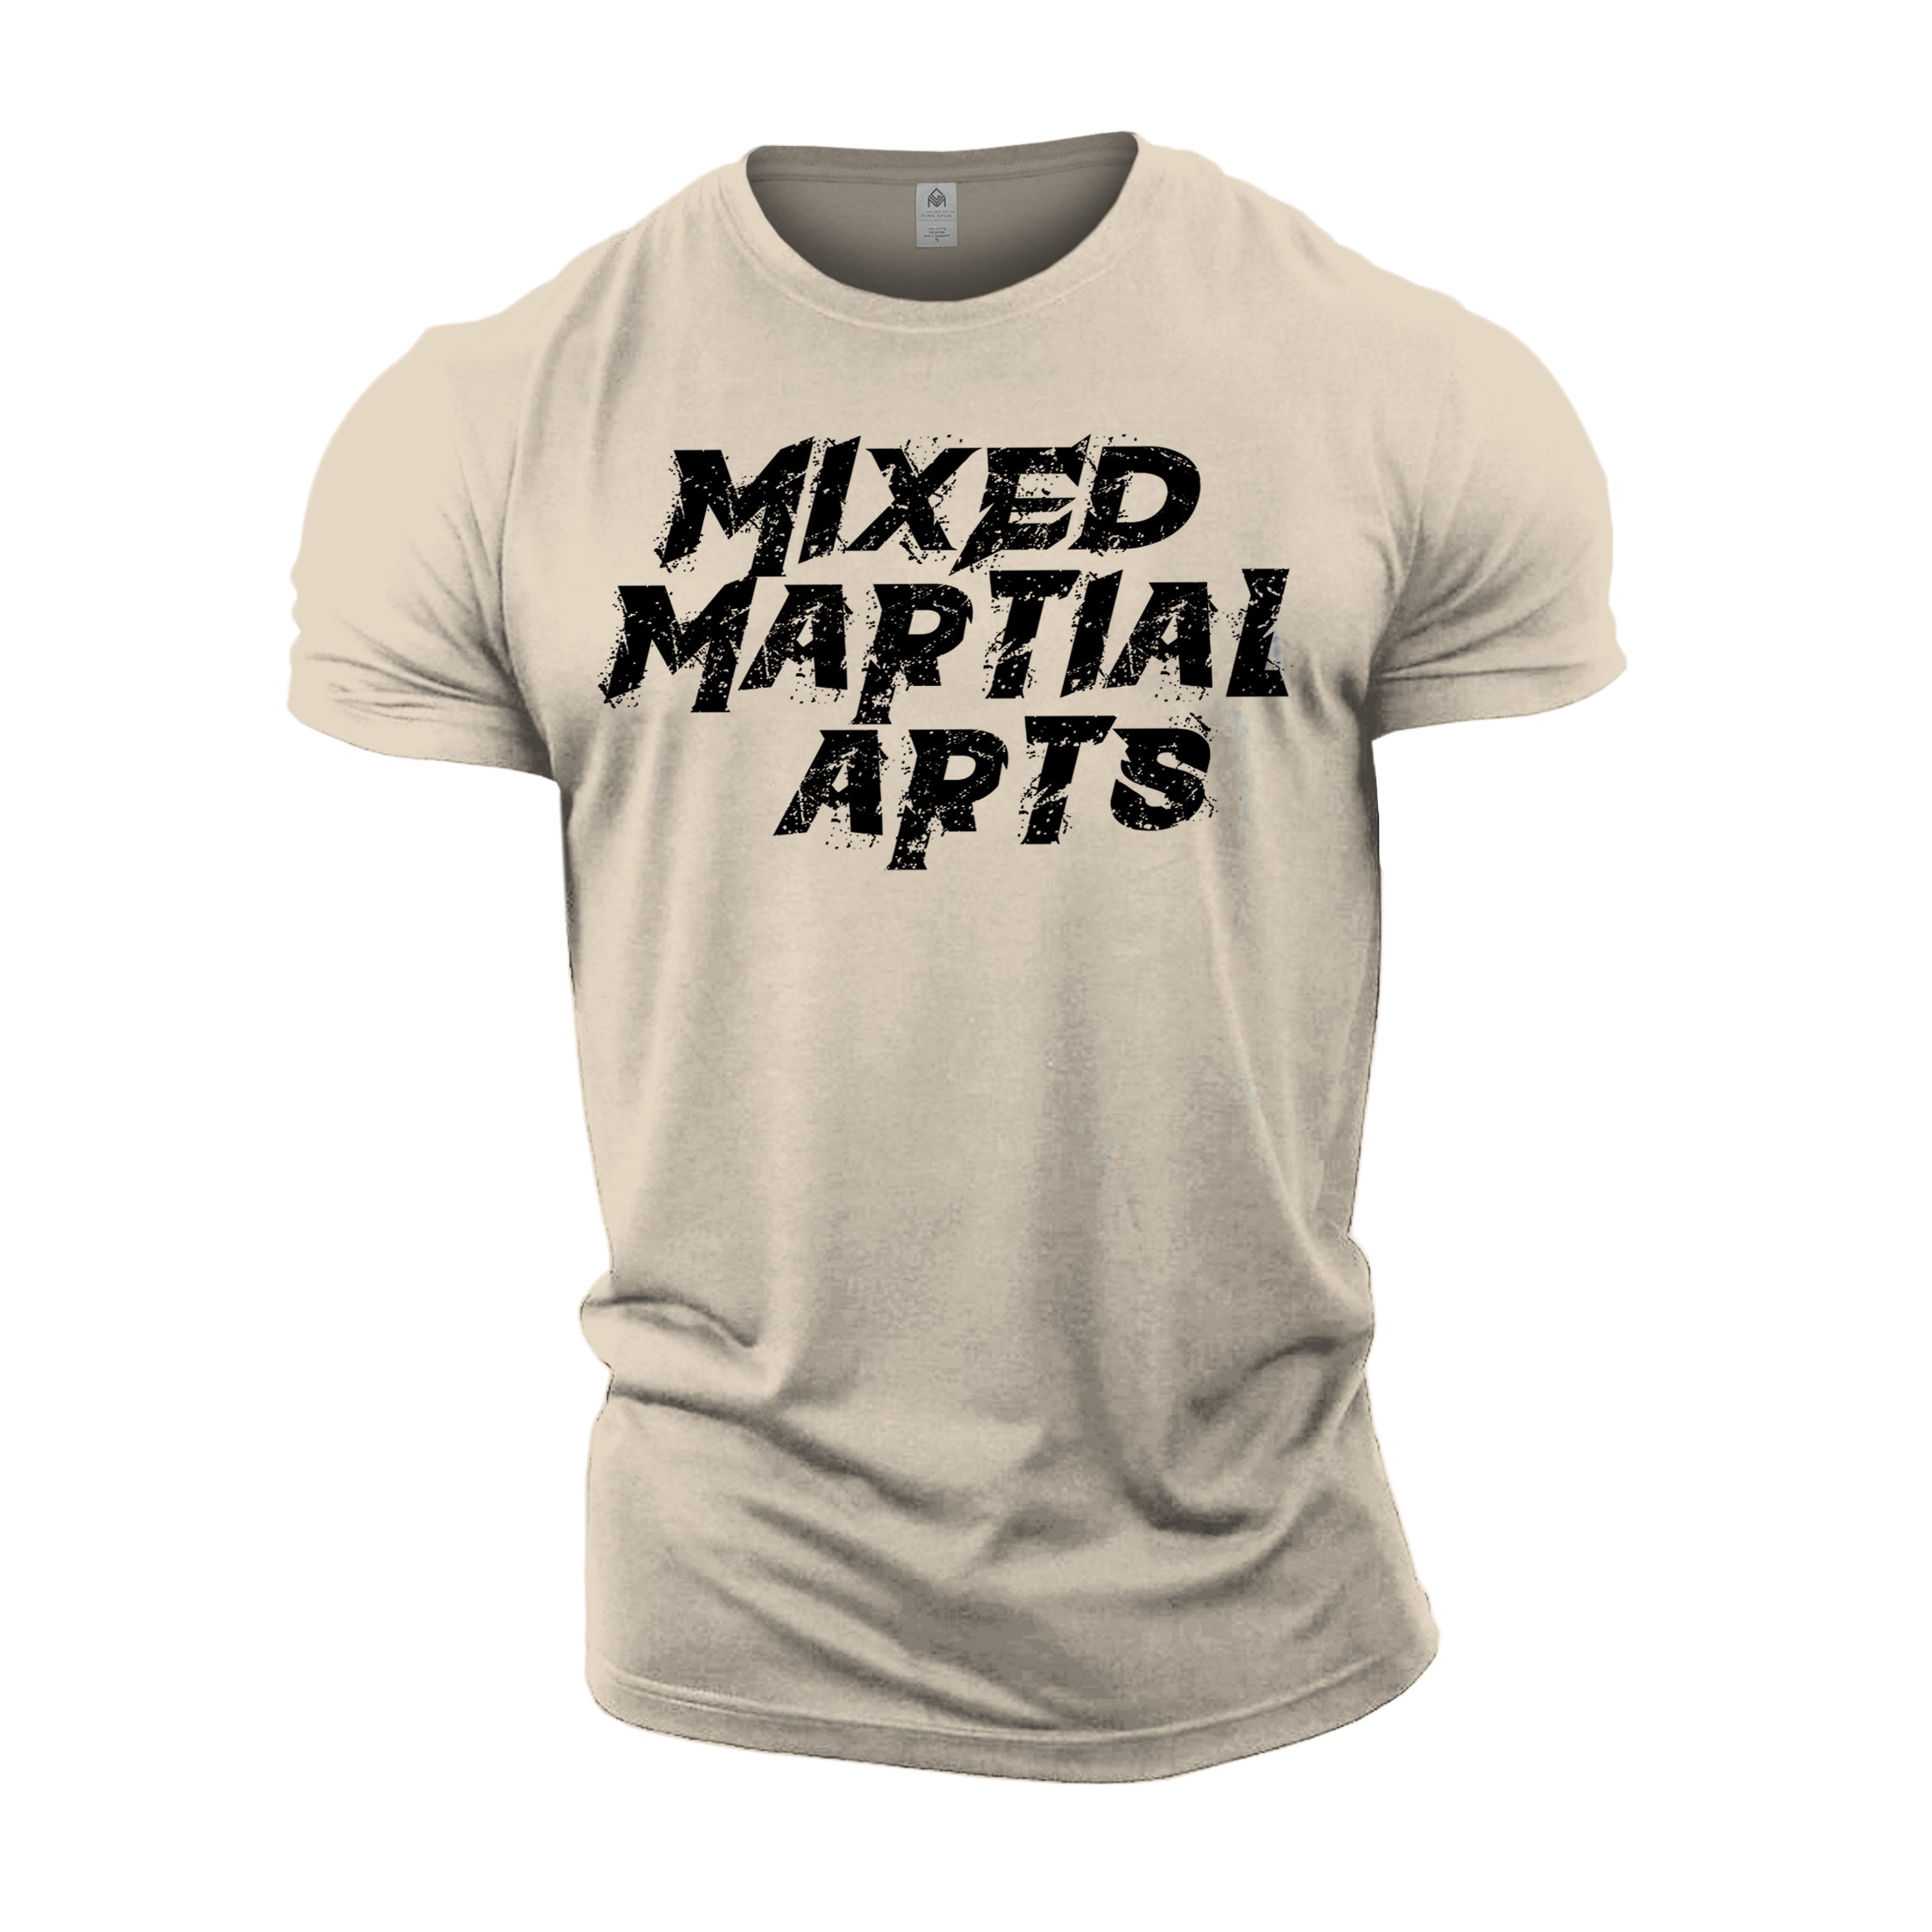 MMA Mixed Martial Arts - Gym T-Shirt